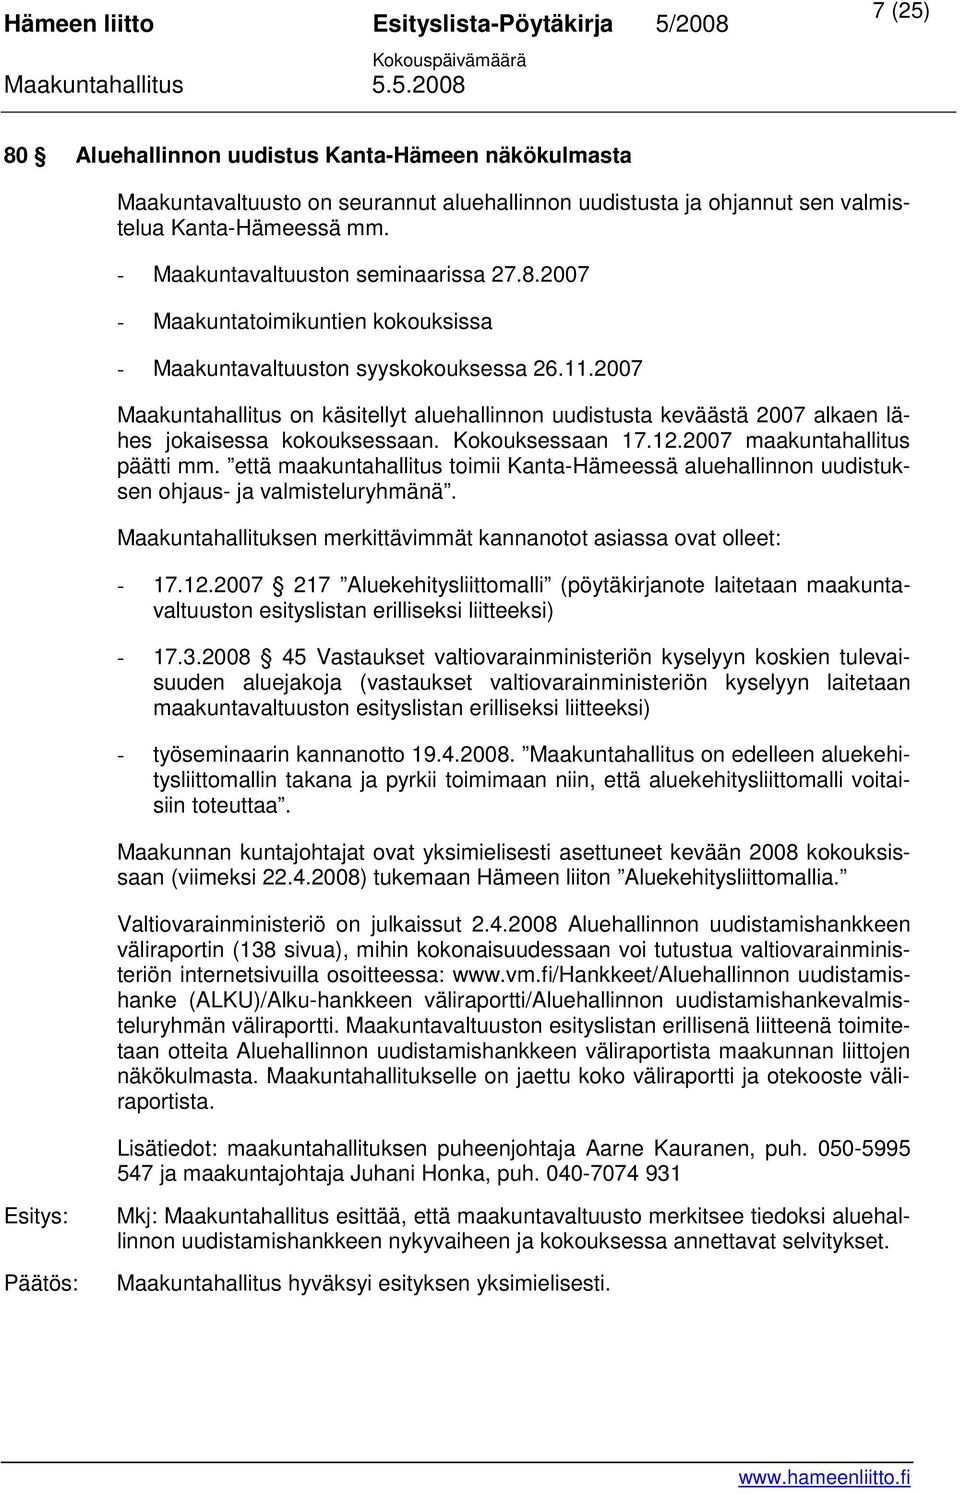 Kokouksessaan 17.12.2007 maakuntahallitus päätti mm. että maakuntahallitus toimii Kanta-Hämeessä aluehallinnon uudistuksen ohjaus- ja valmisteluryhmänä.